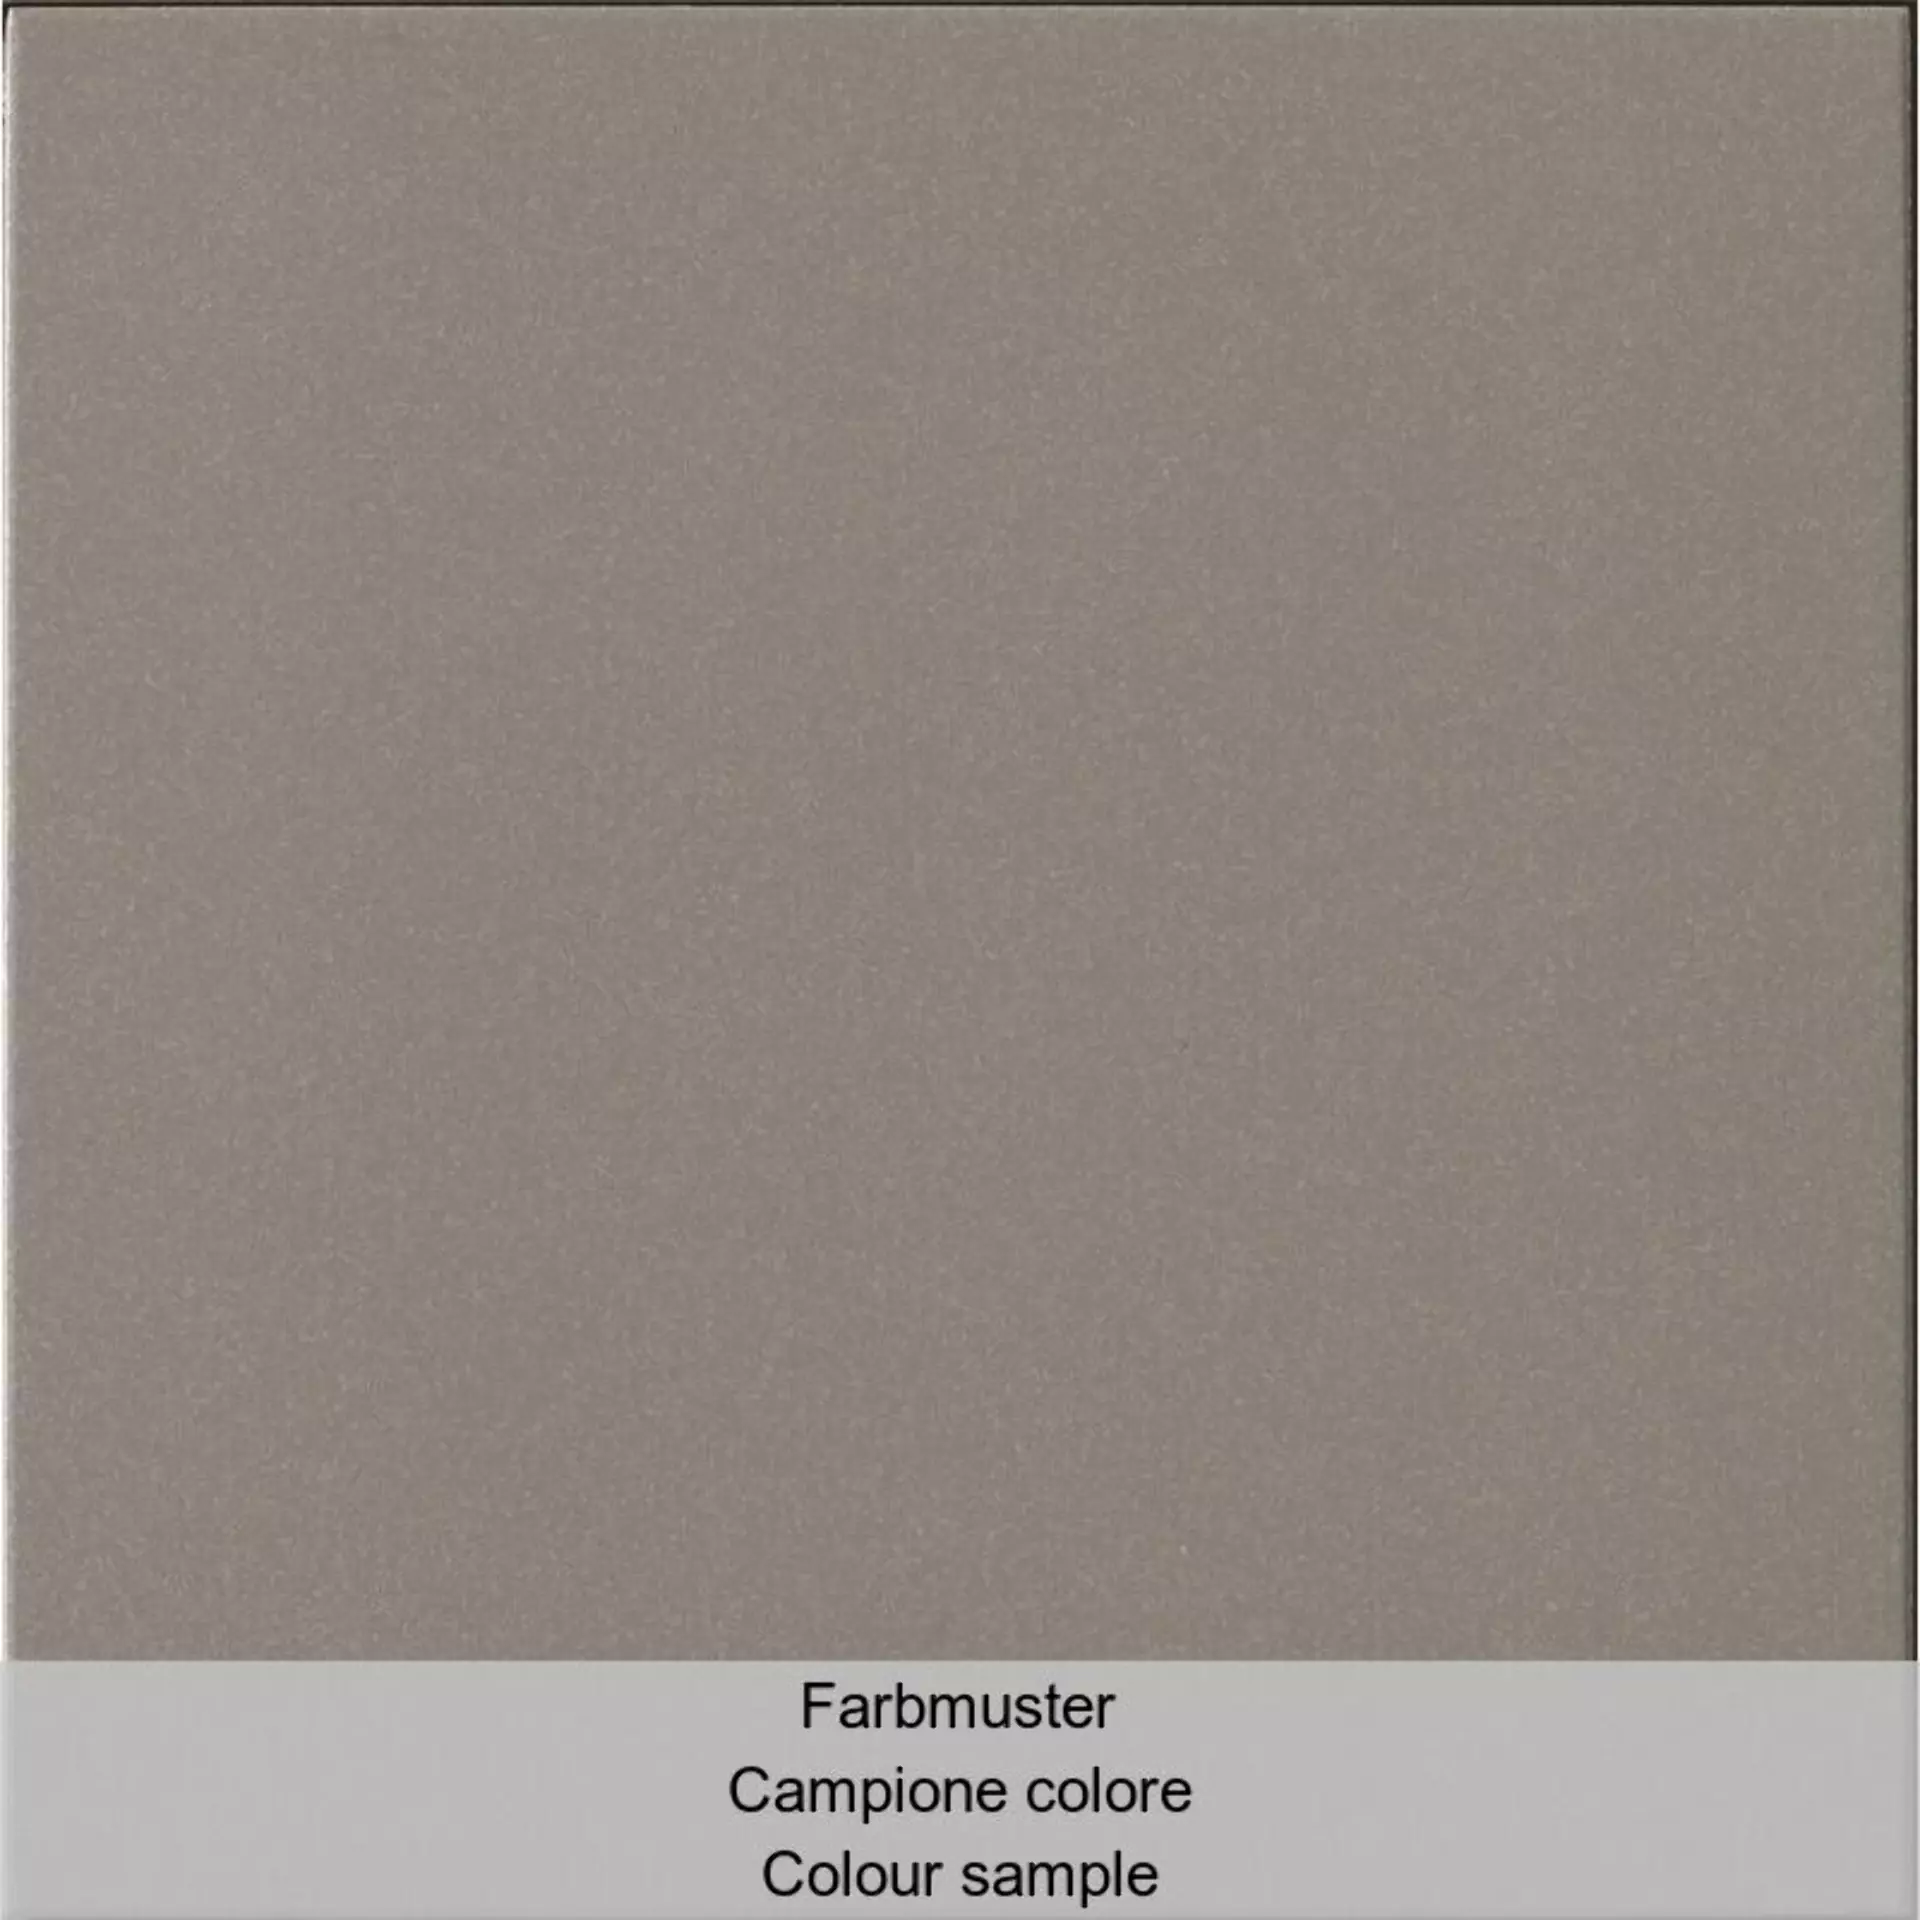 Casalgrande Granito Evo Chicagp Naturale – Matt 3950084 60x60cm rectified 10mm